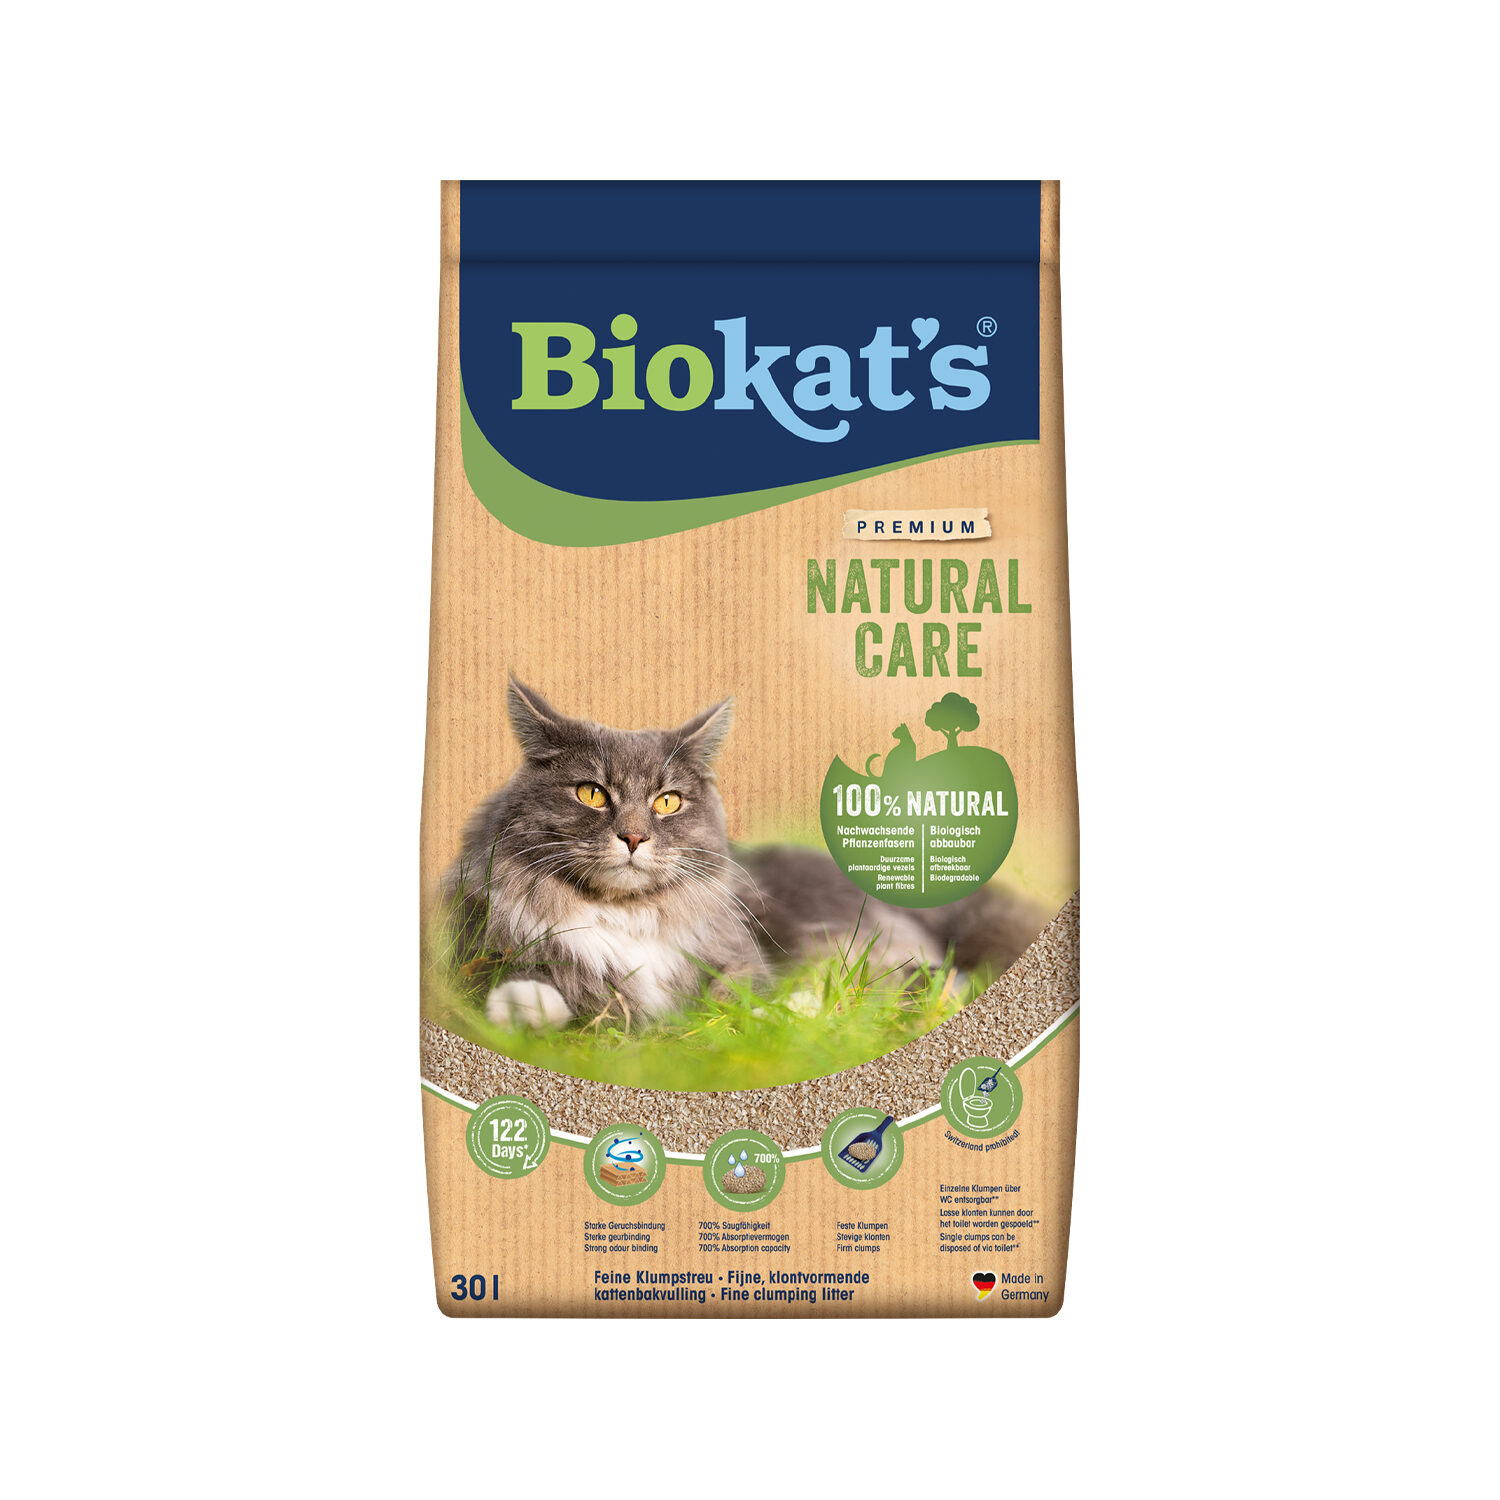 Biokat’s Natural Care - 30 l